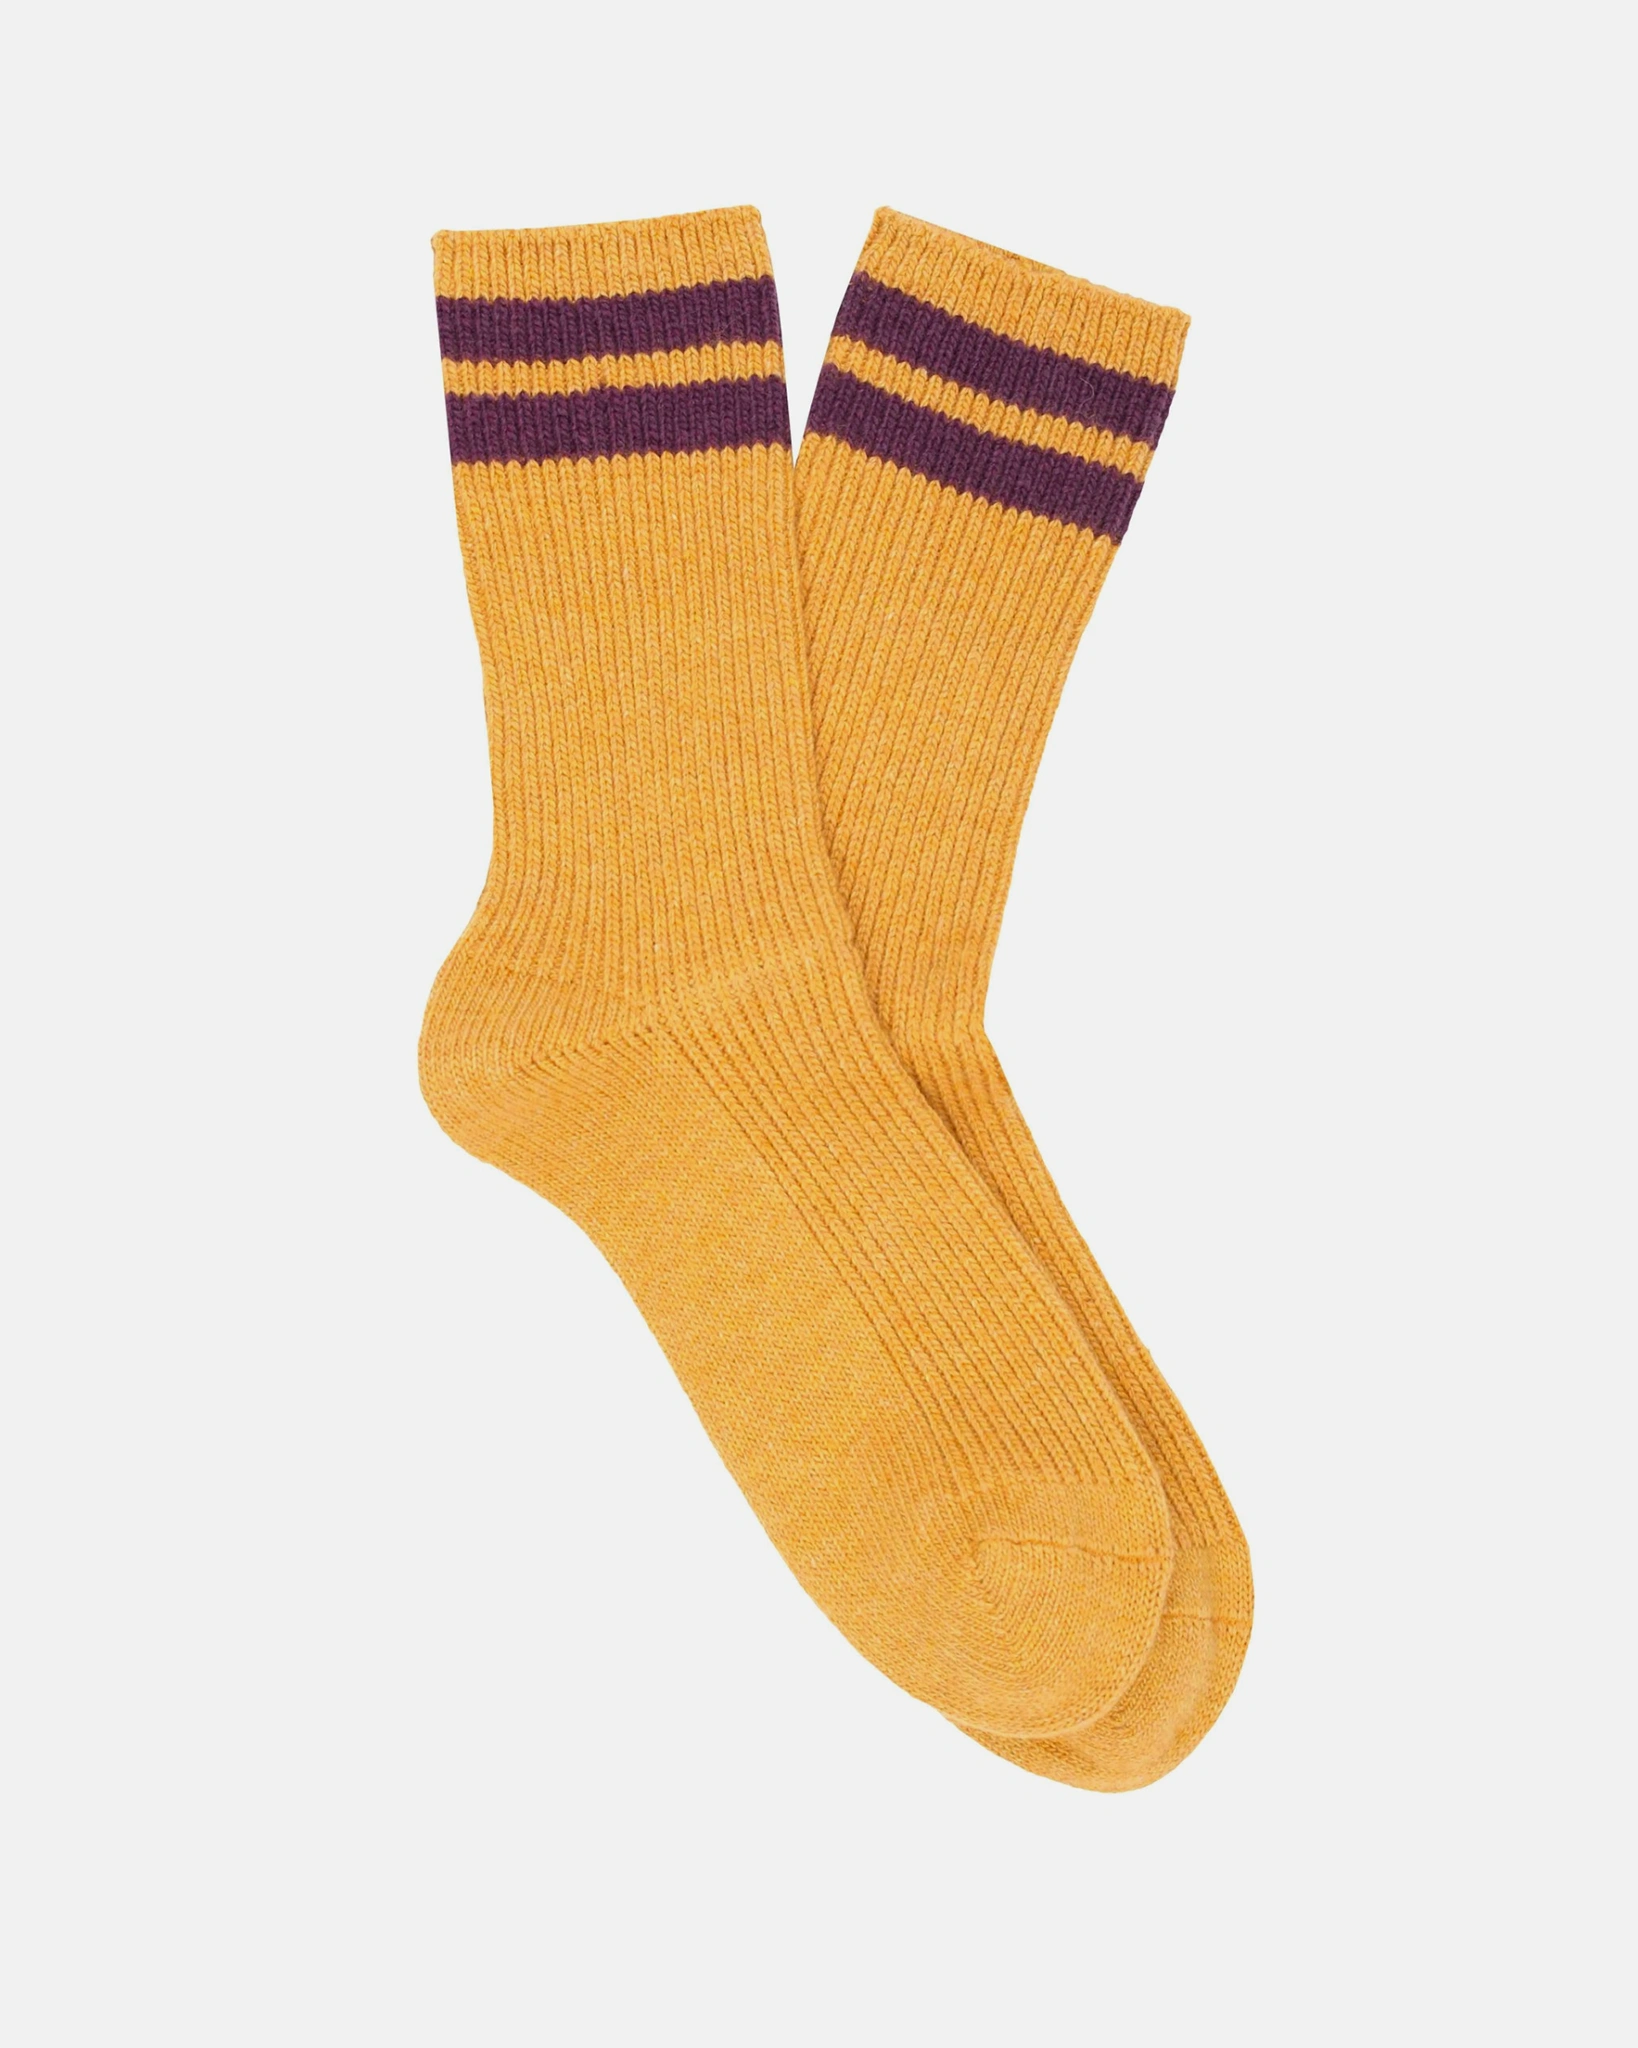 Chaussettes rayées en cachemire couleur moutarde et violette